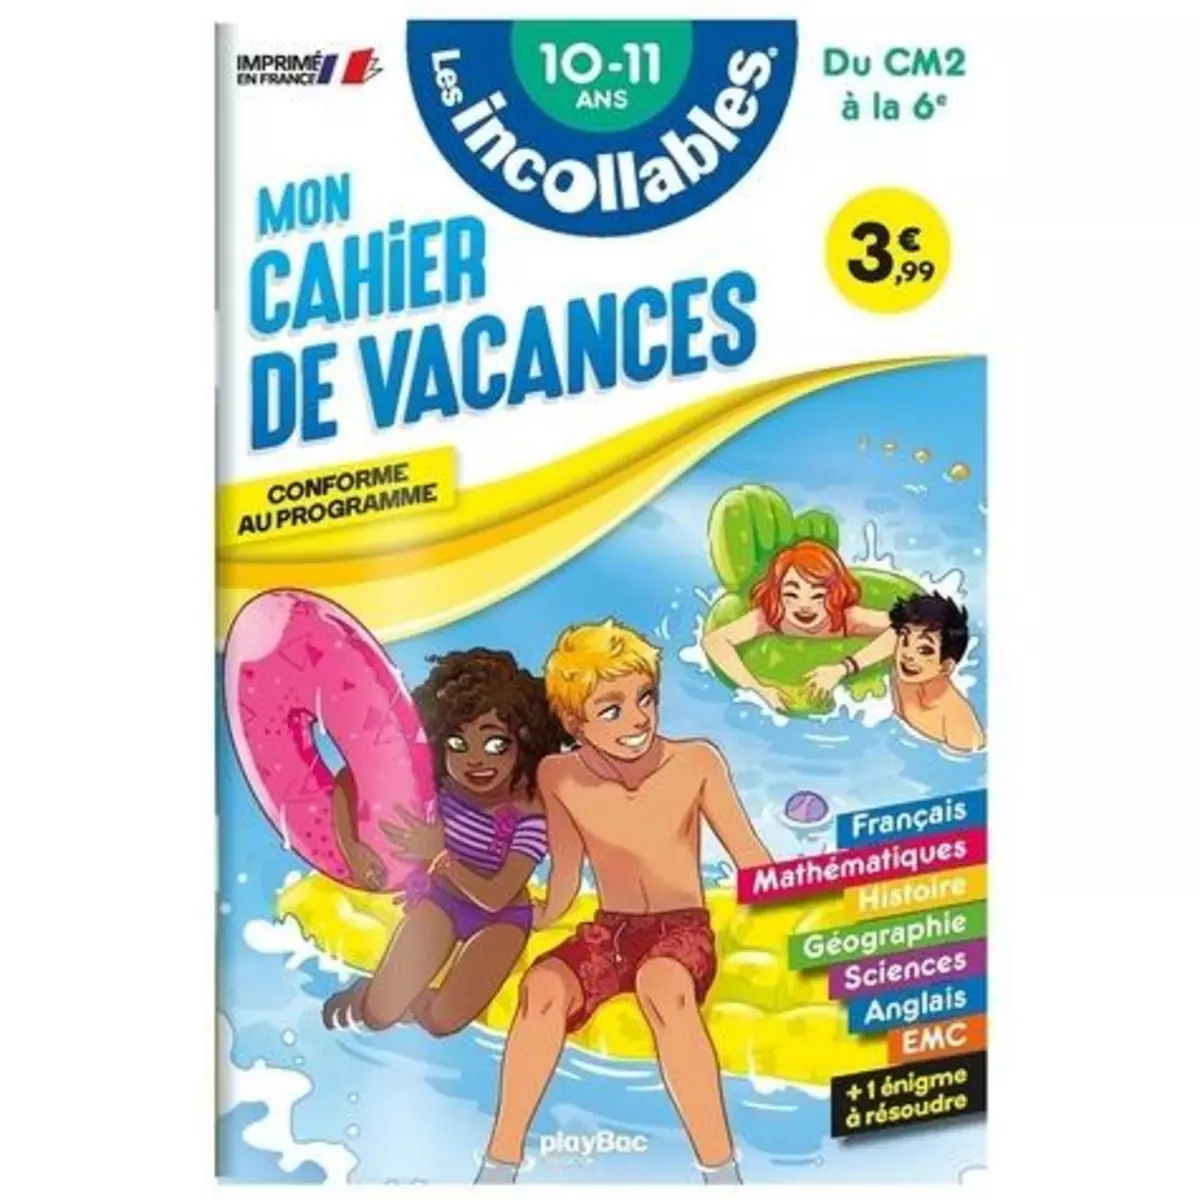  MON CAHIER DE VACANCES DU CM2 A LA 6E. 10-11 ANS, EDITION 2023, Playbac